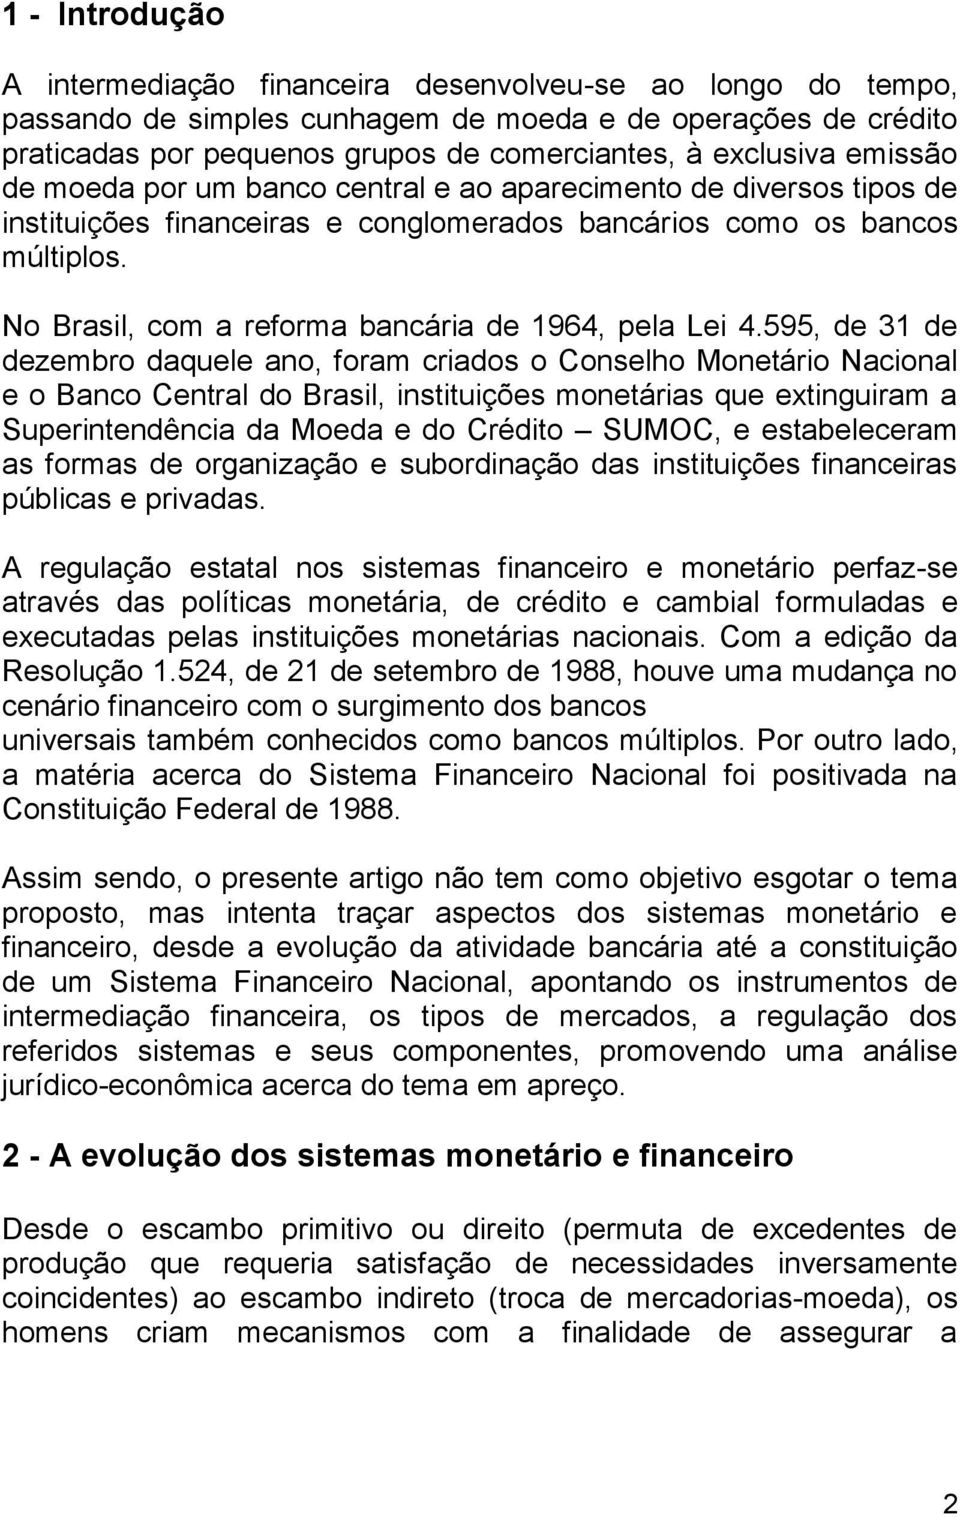 No Brasil, com a reforma bancária de 1964, pela Lei 4.